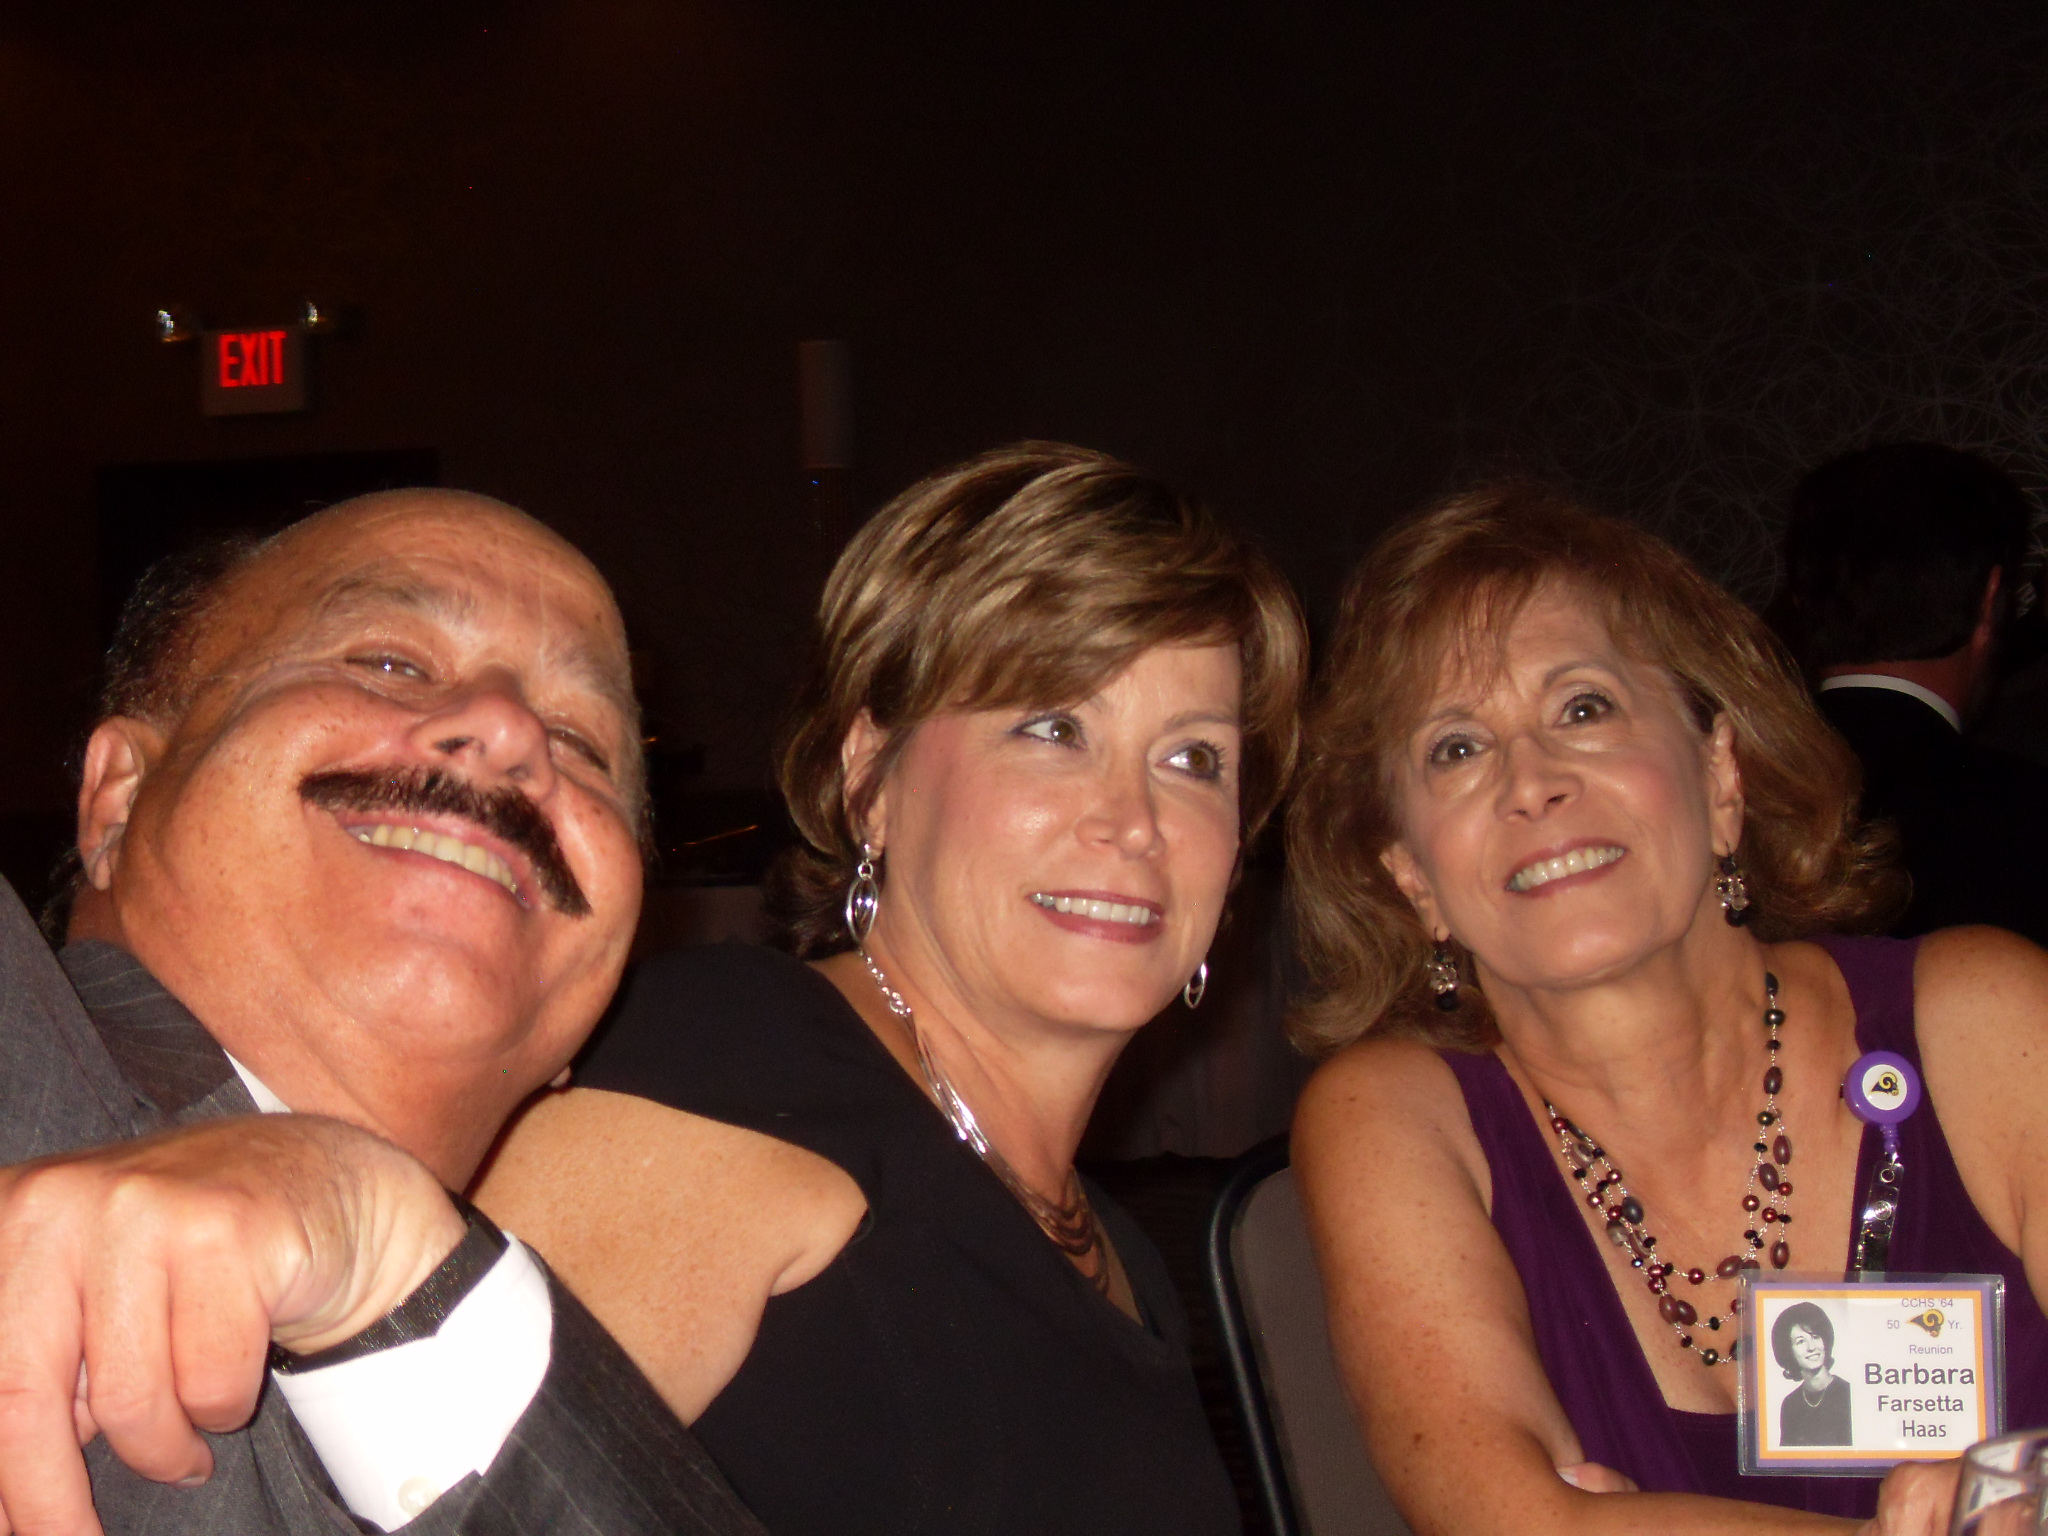 Jim Farsetta, Joann(?) Farsetta and Barbara Farsetta